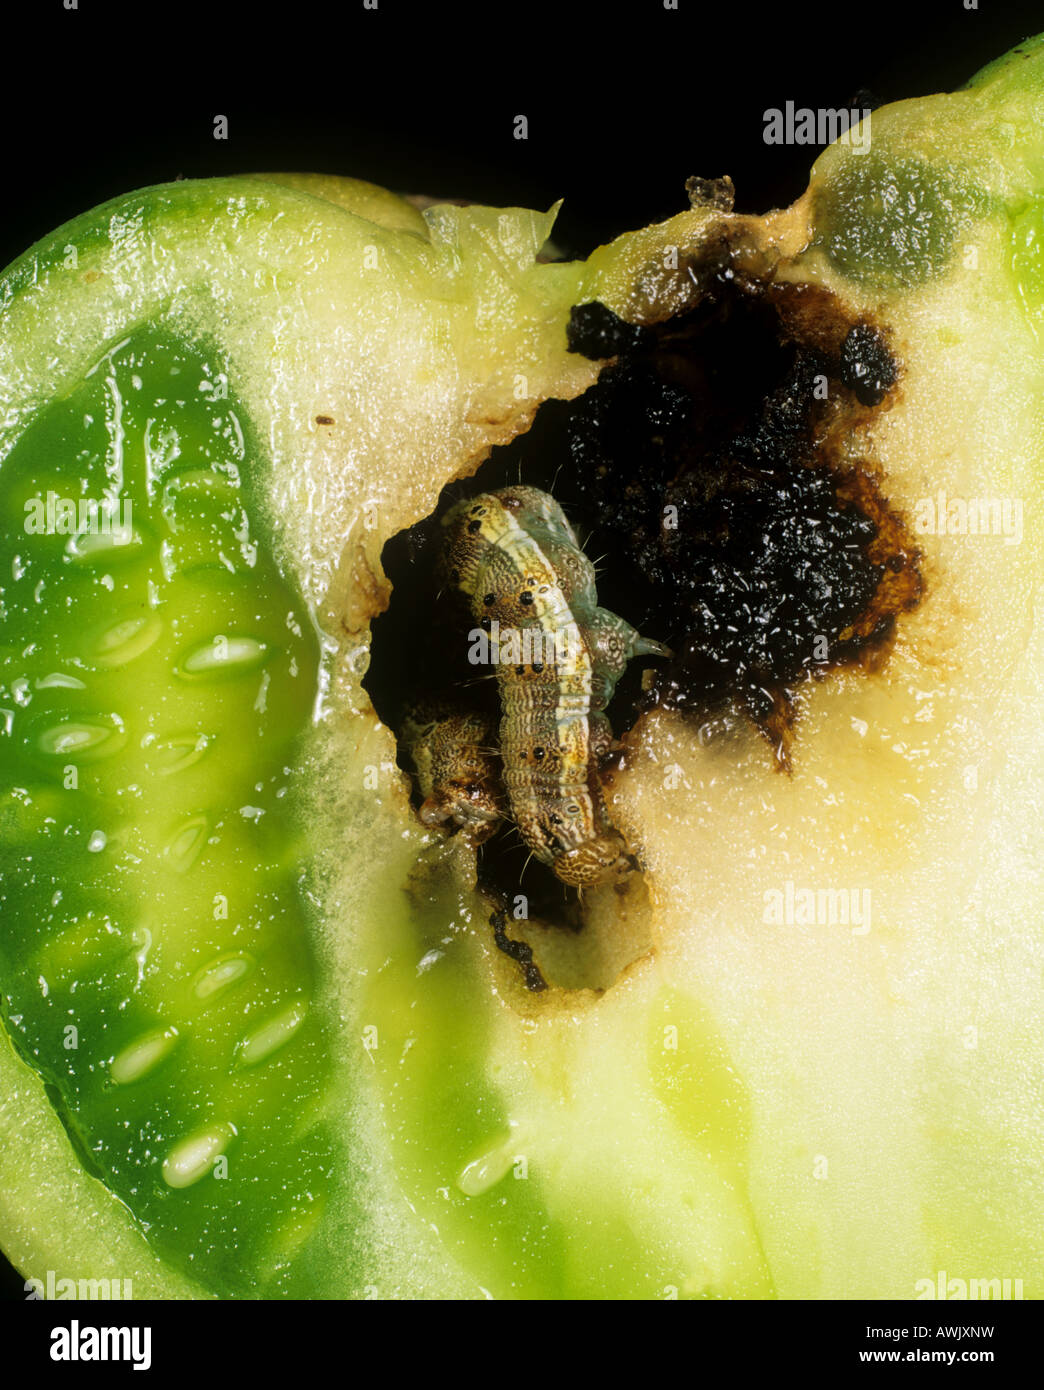 Tomate fruitworm Helicoverpa armigera daños en frutos de tomate Portugal Foto de stock